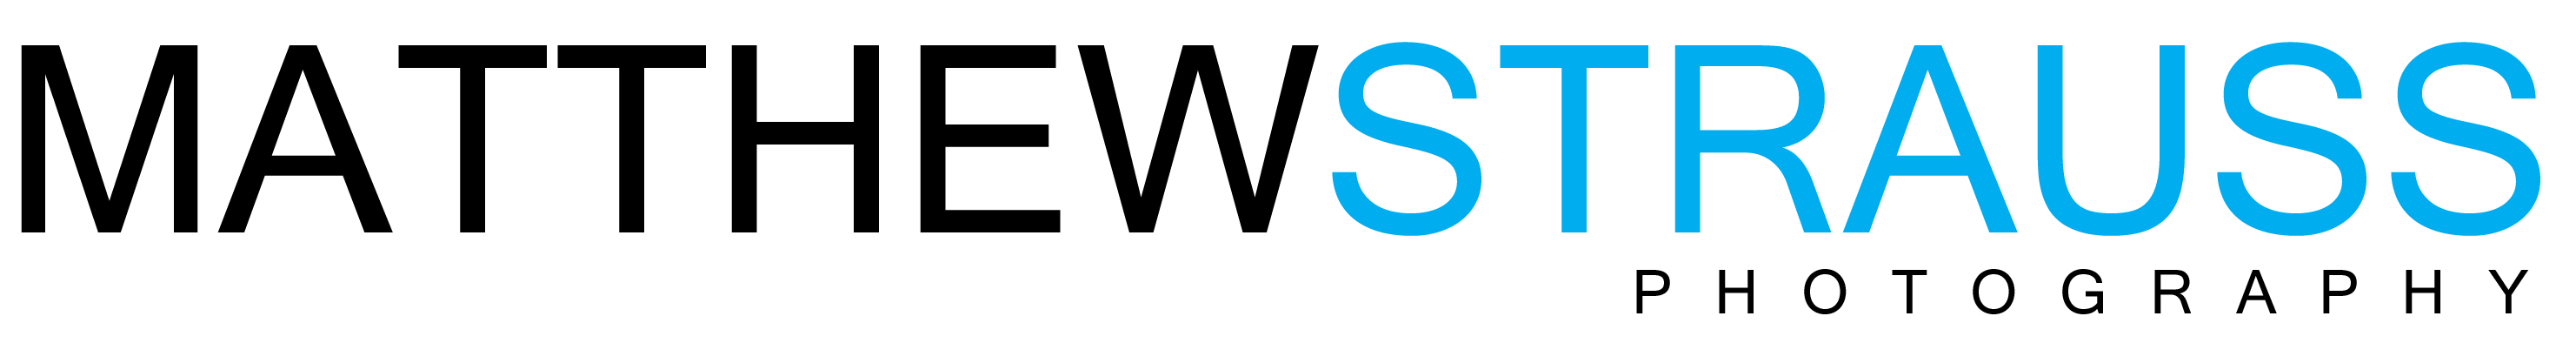 matthew-strauss-logo